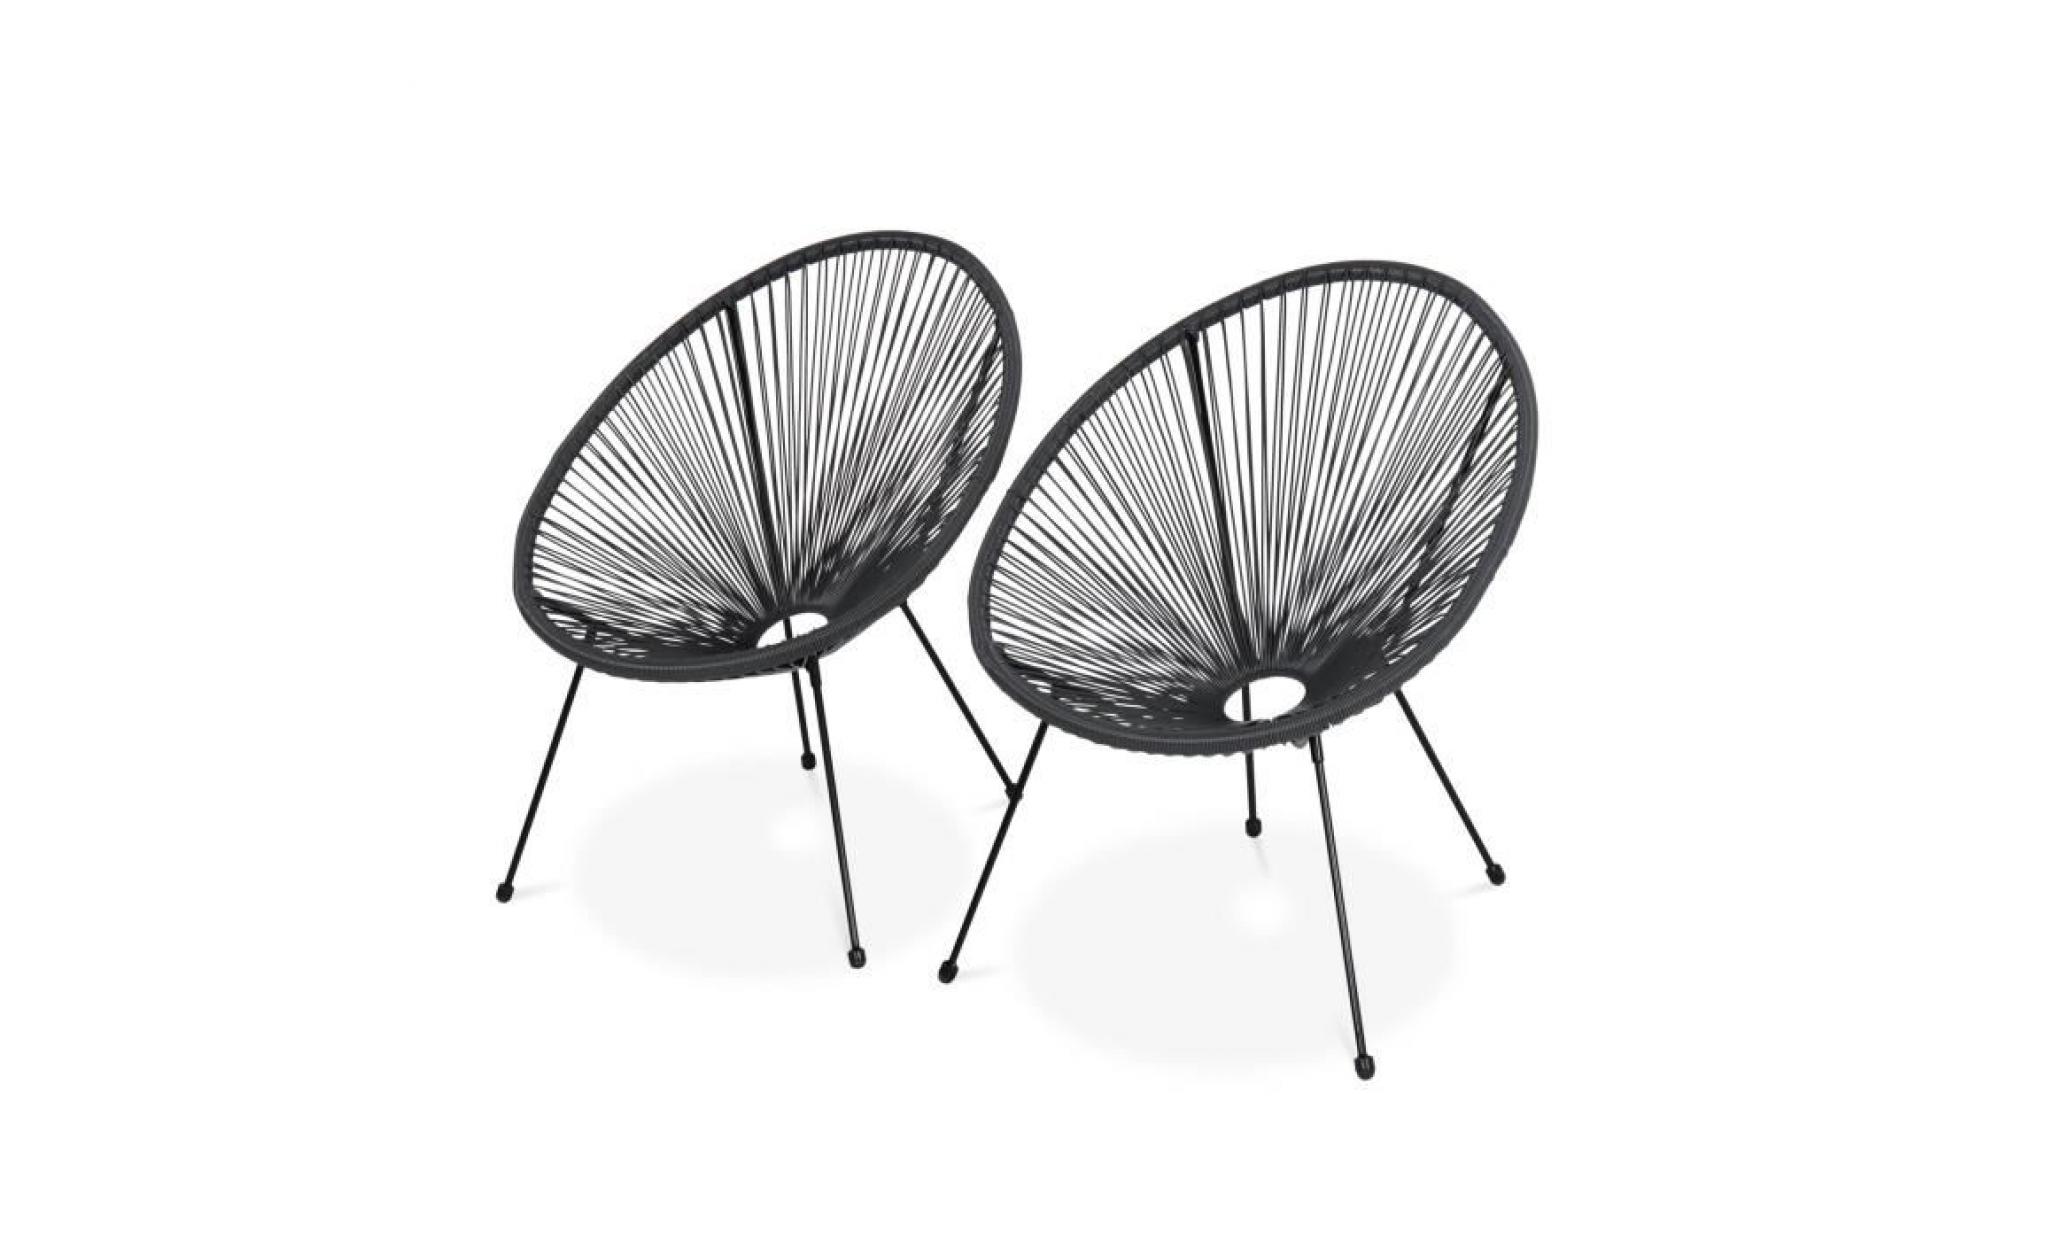 lot de 2 fauteuils design oeuf   acapulco gris foncé   fauteuils 4 pieds design rétro, cordage plastique, intérieur / extérieur